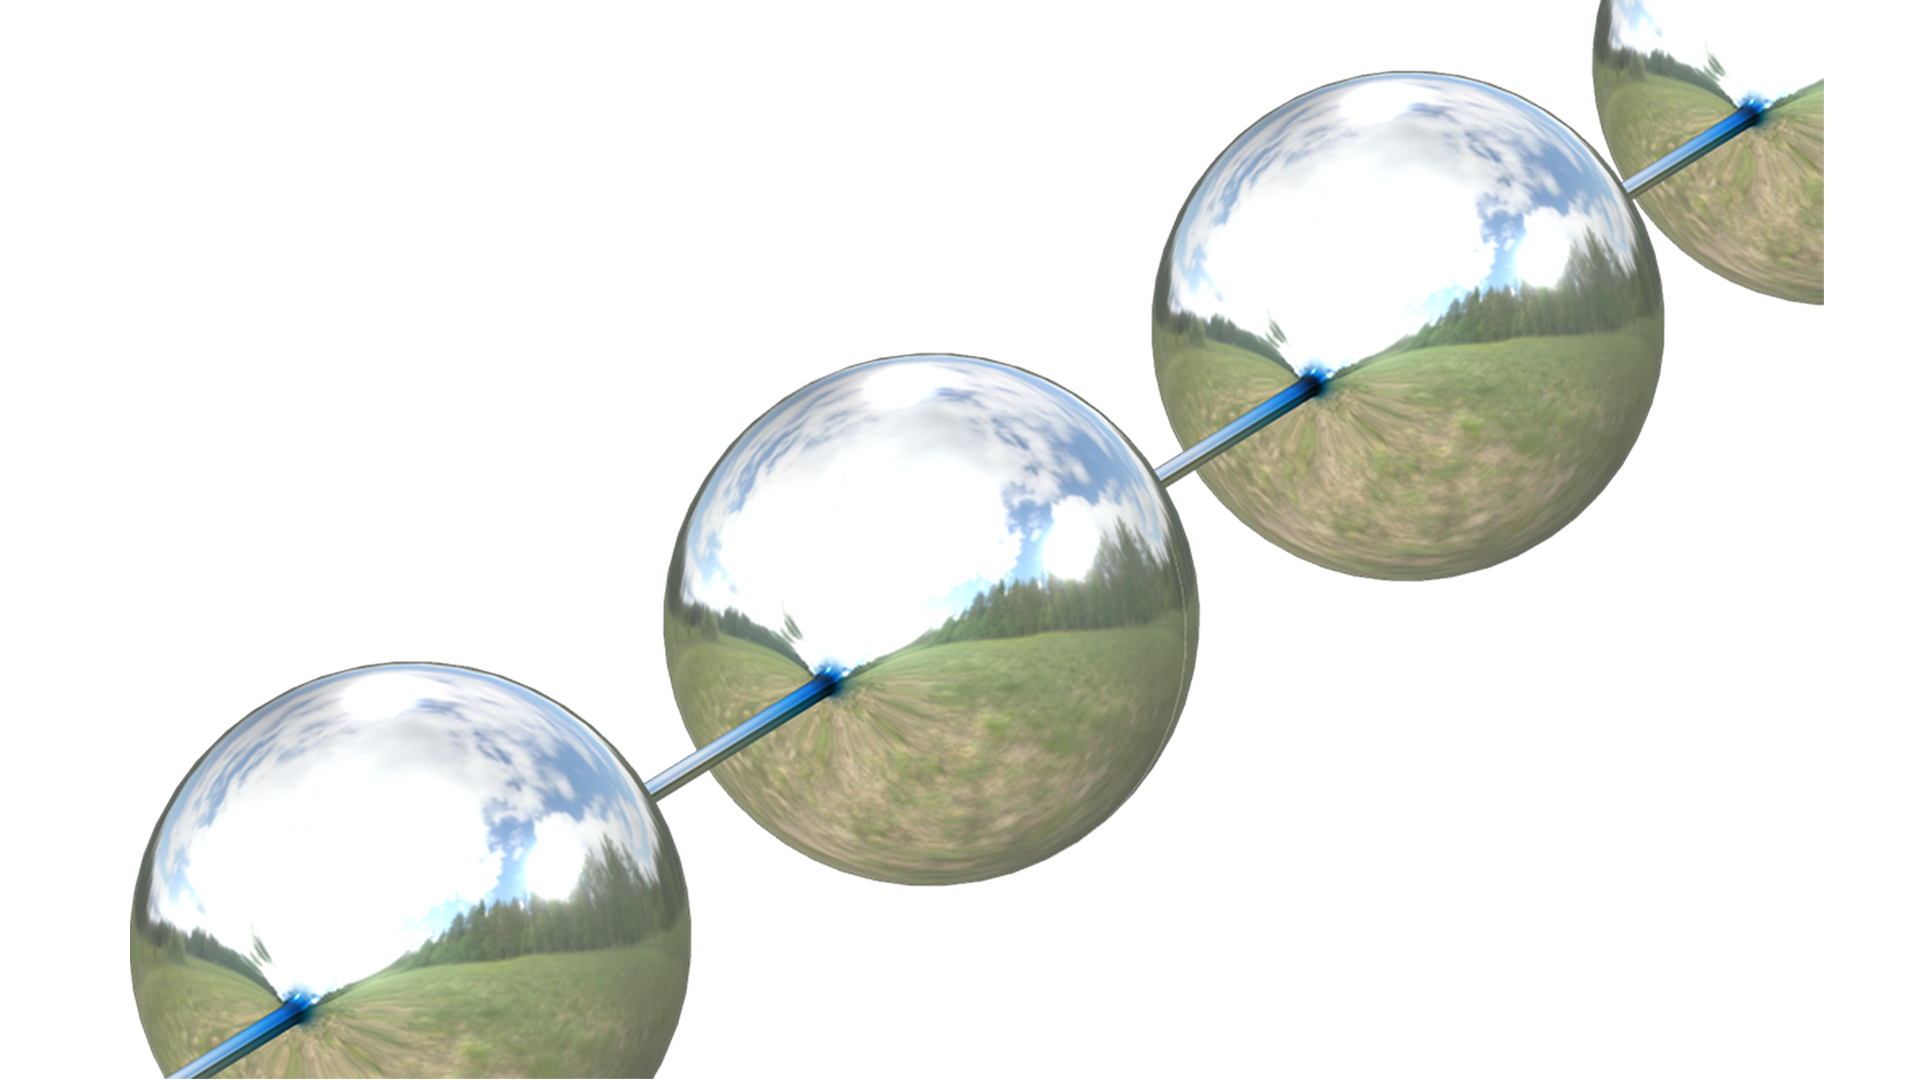 Visualizzazione ritagliata di un modello con perline su un filo con due perline intere e due perline parziali, tutte con una lucentezza metallica e un riflesso che mostra il cielo, gli alberi e un campo.